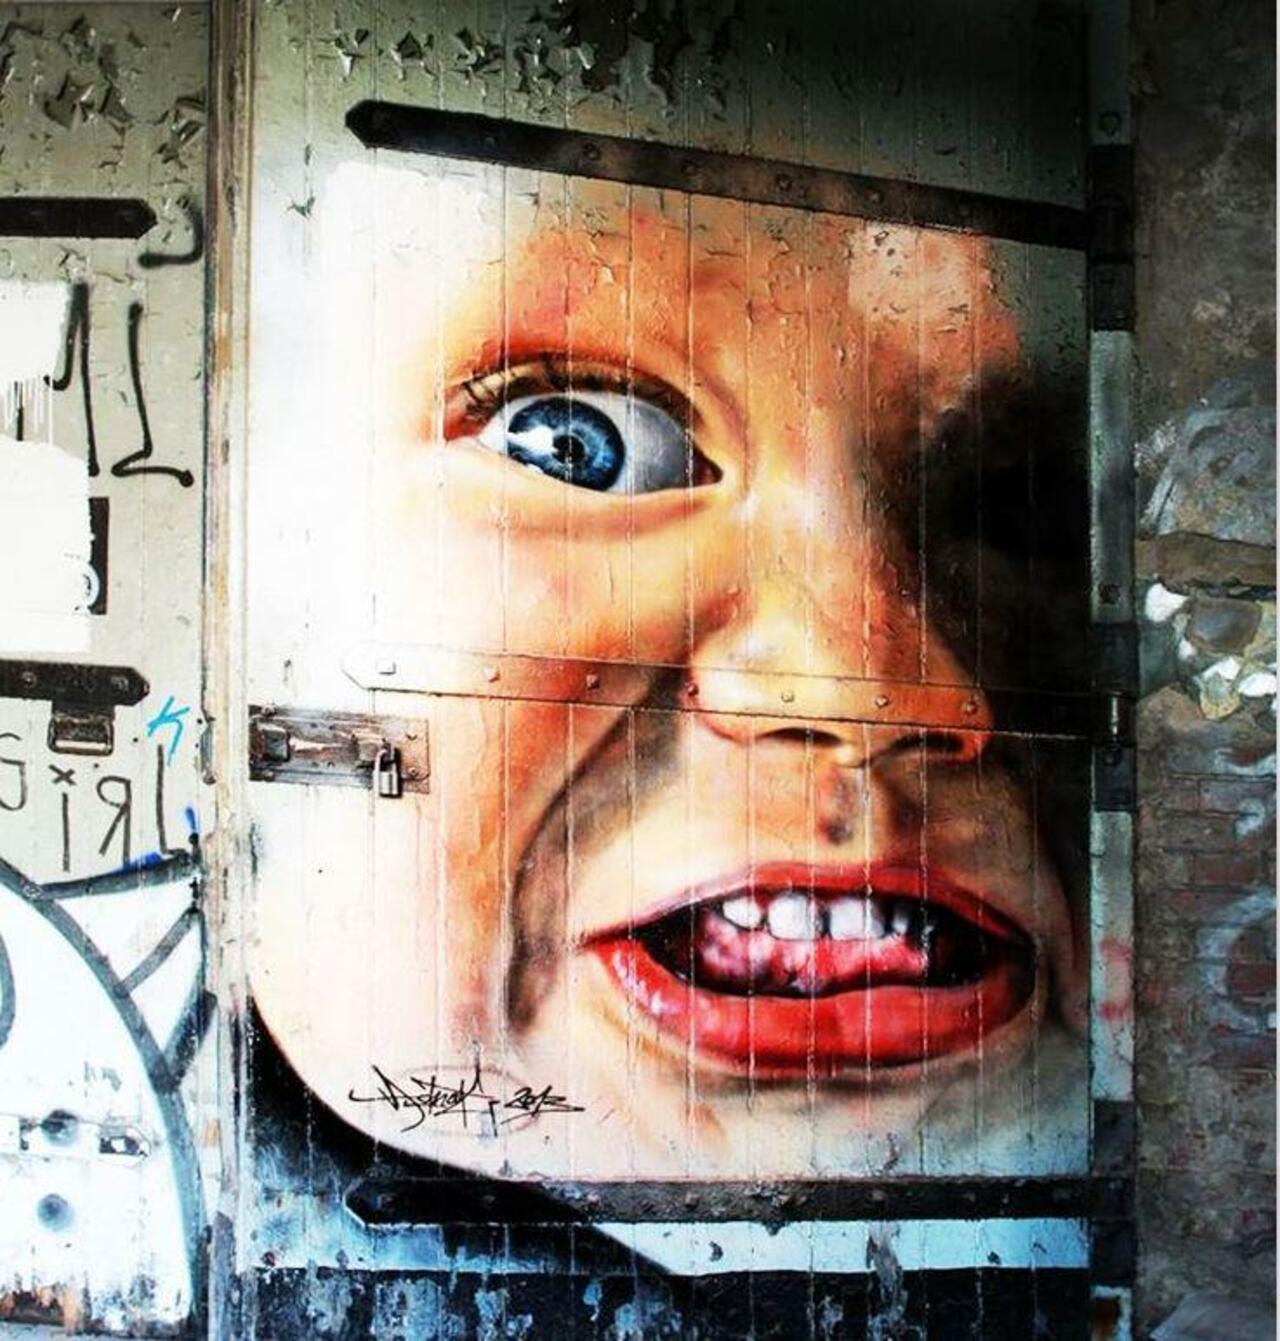 RT @5putnik1: Baby Face   • #streetart #graffiti #art #funky #dope . : http://t.co/yscN1HnL8B